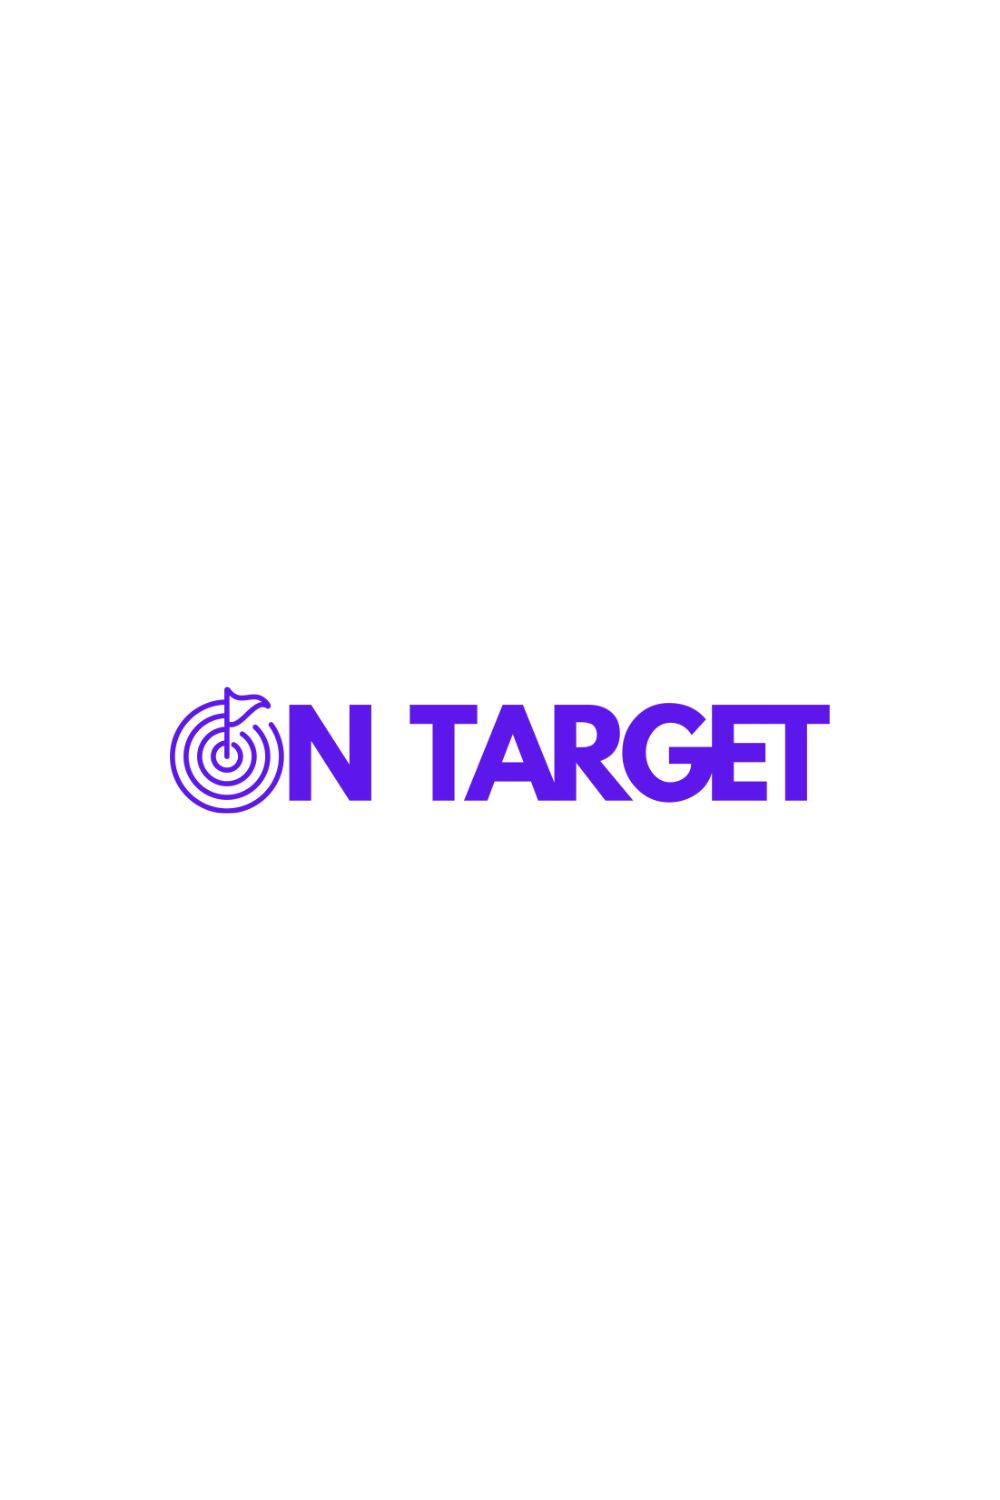 on target logo design pinterest preview image.